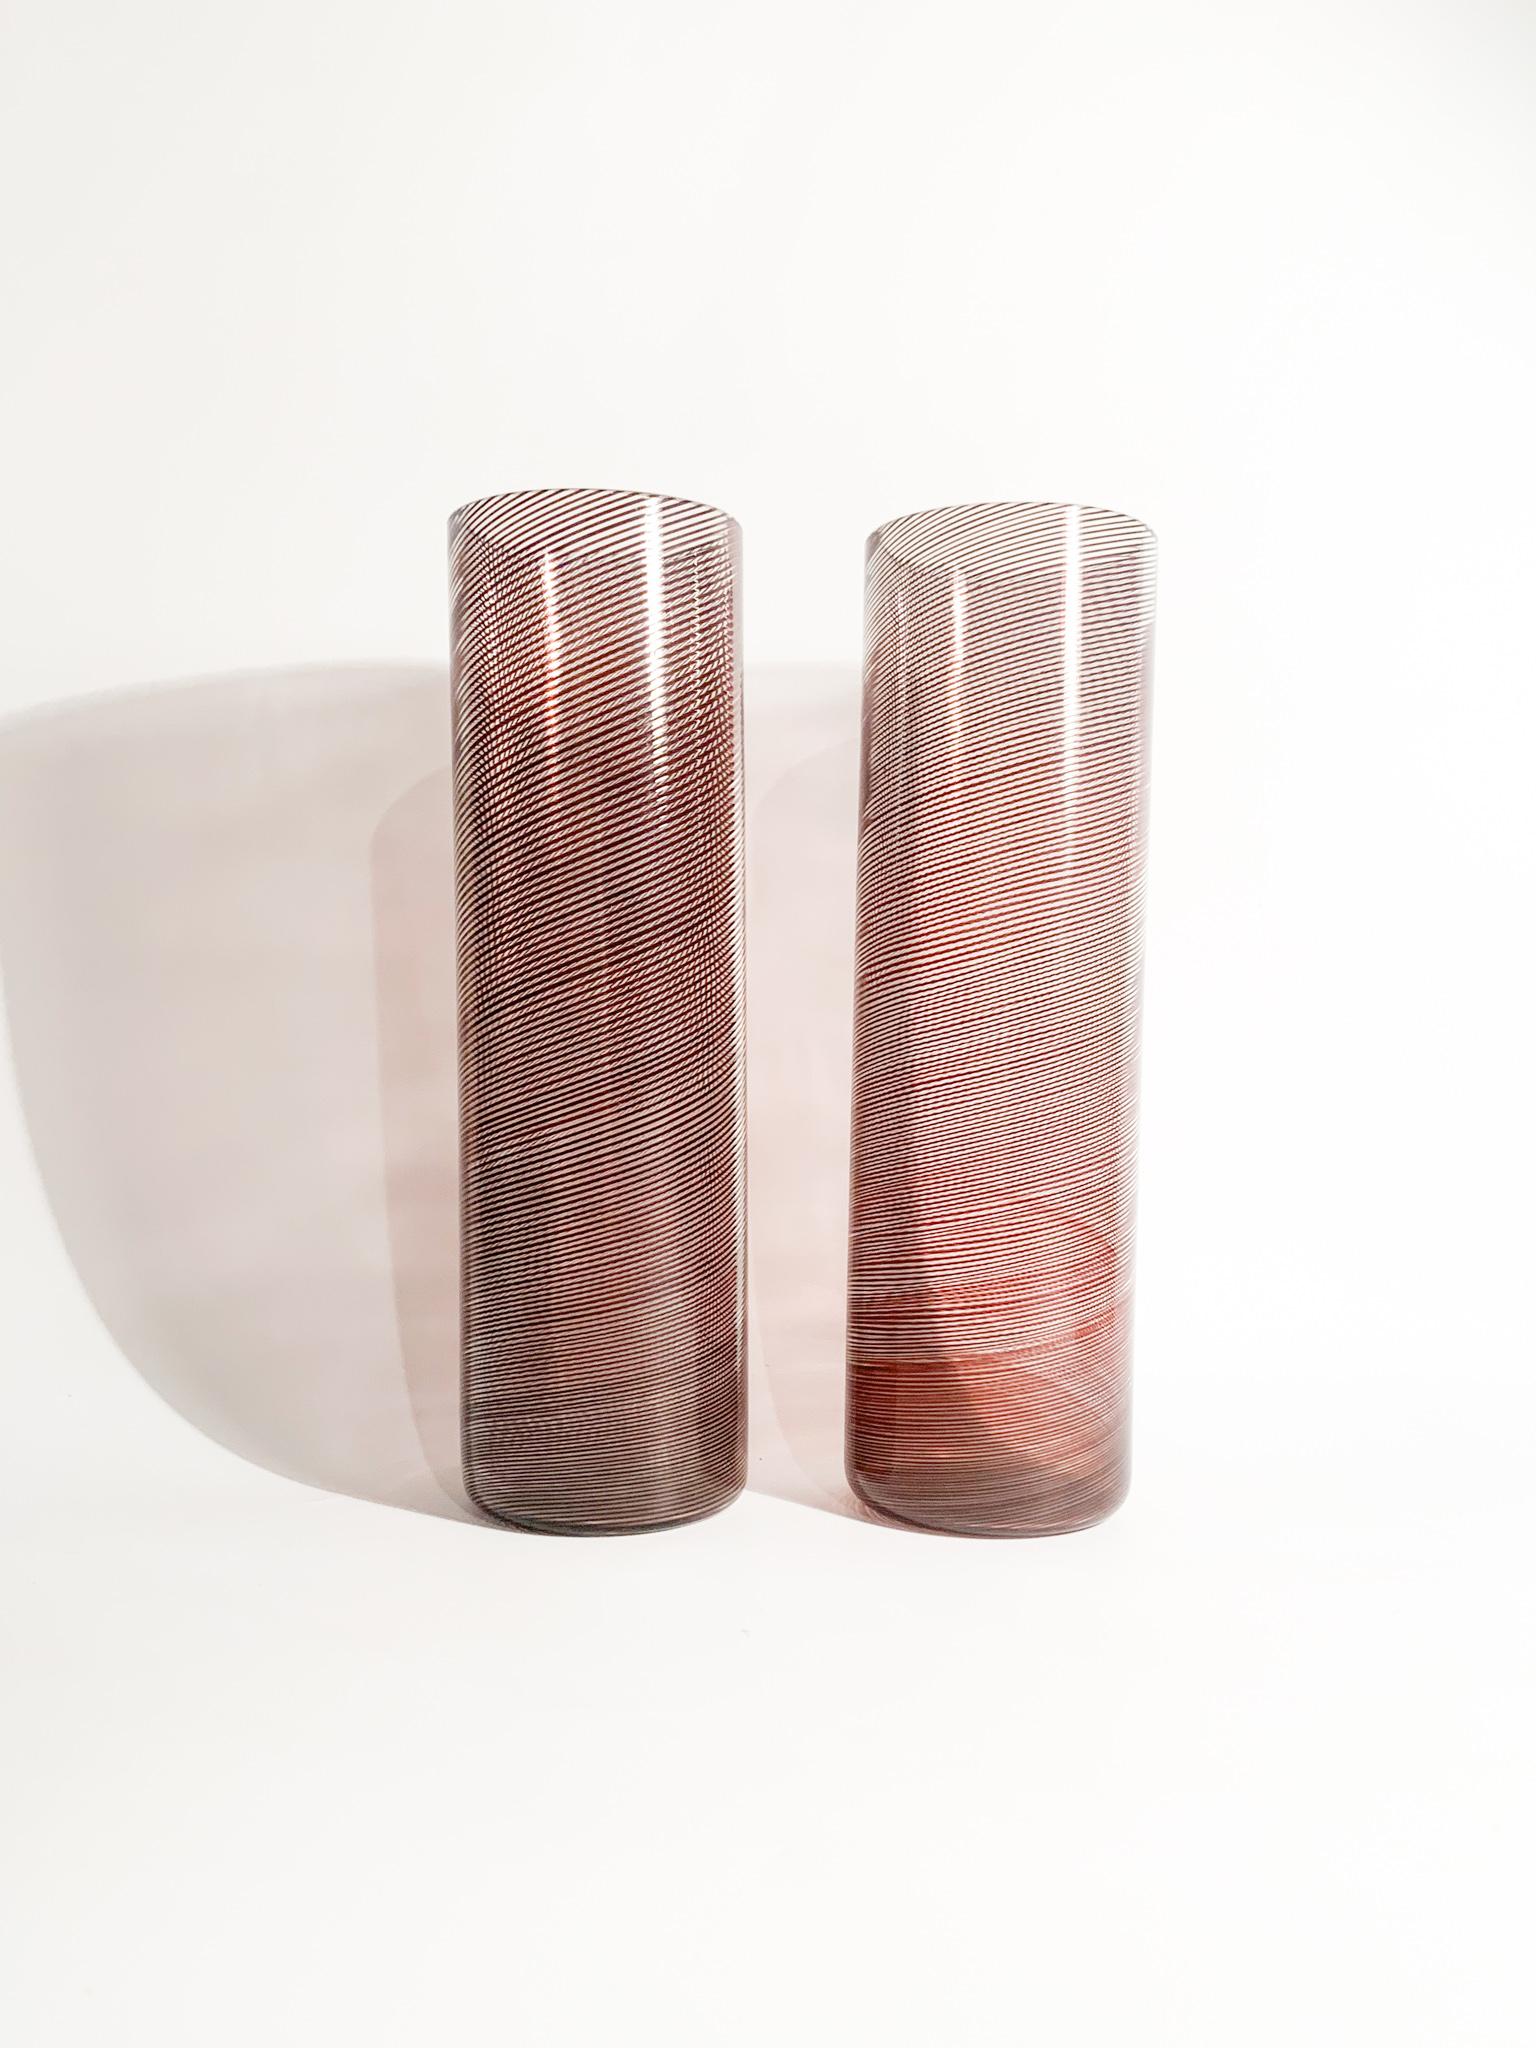 Paar Vasen in zylindrischer Form mit spiralförmiger, filigraner Verarbeitung, entworfen von Tapio Wirkkala und hergestellt von Venini in den 1970er Jahren.

Ø cm 8 h cm 27

Tapio Veli Ilmari Wirkkala (Hanko, 2. Juni 1915 - Helsinki, 19. Mai 1985)